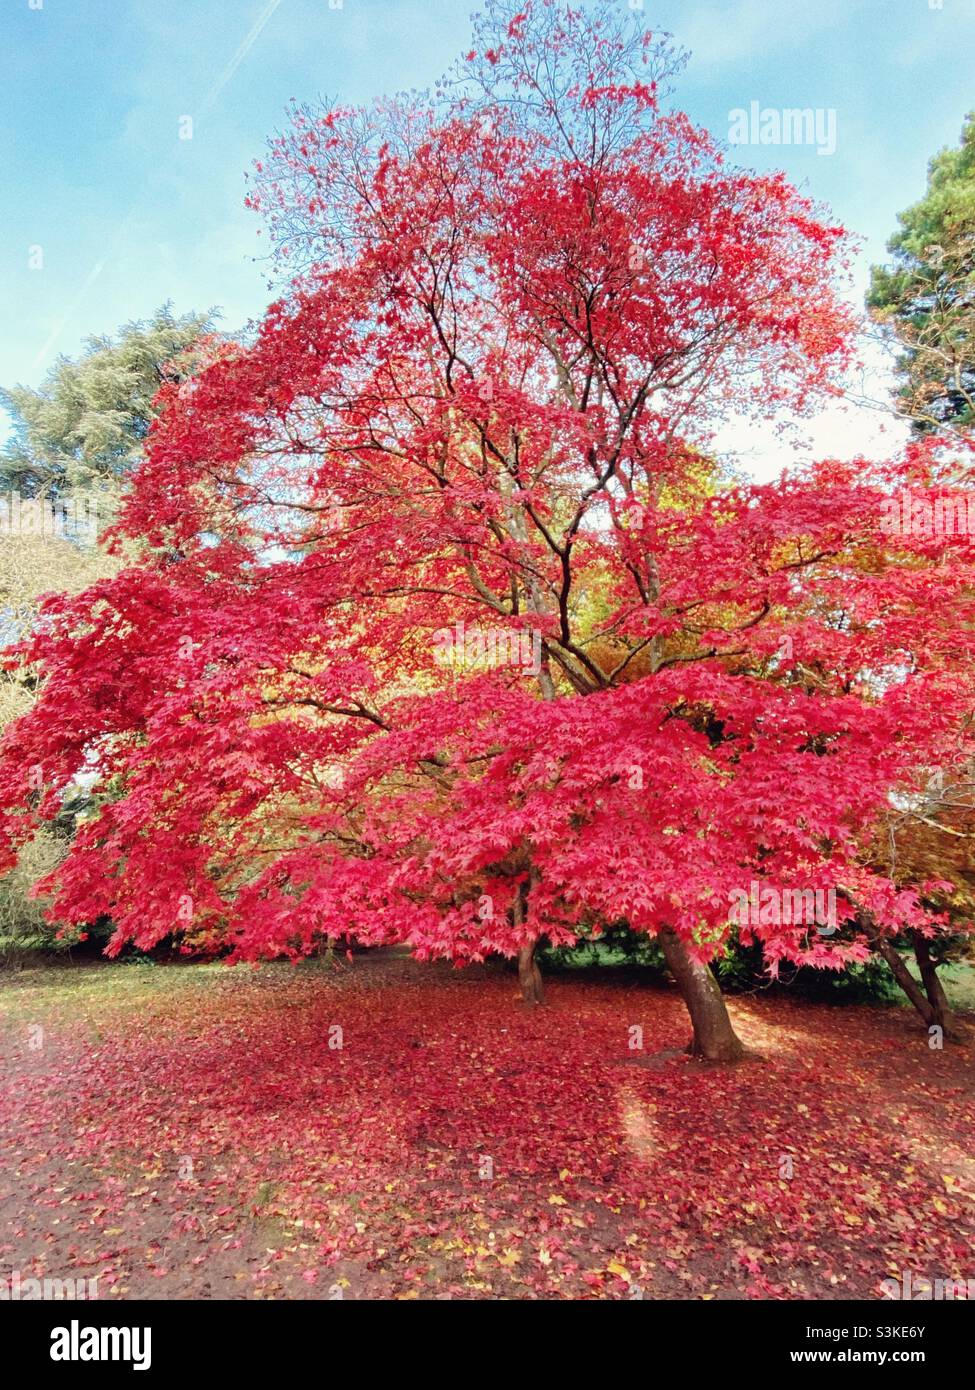 Rosa-rosso alto gigante acer albero, acero giapponese, in autunno come le foglie stanno cadendo, Westonbirt arboretum, Gloucestershire, Regno Unito Foto Stock